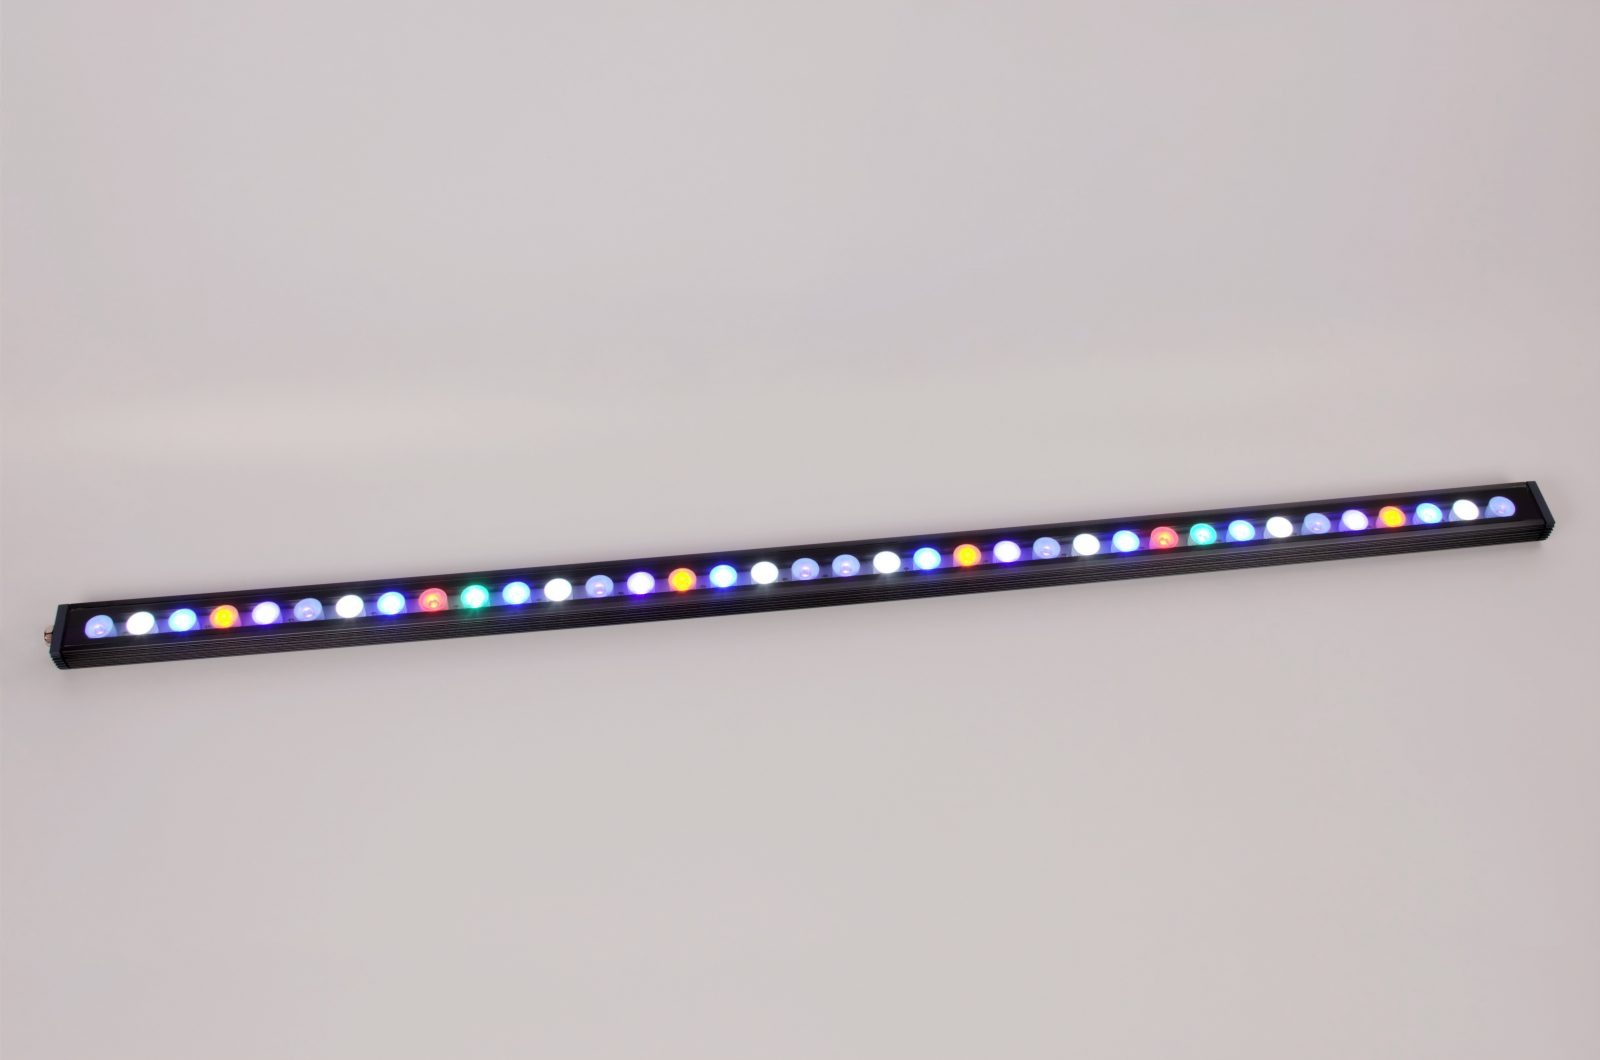 കോറൽ പോപ്പ് റീഫ് ടാങ്ക് LED ബാർ